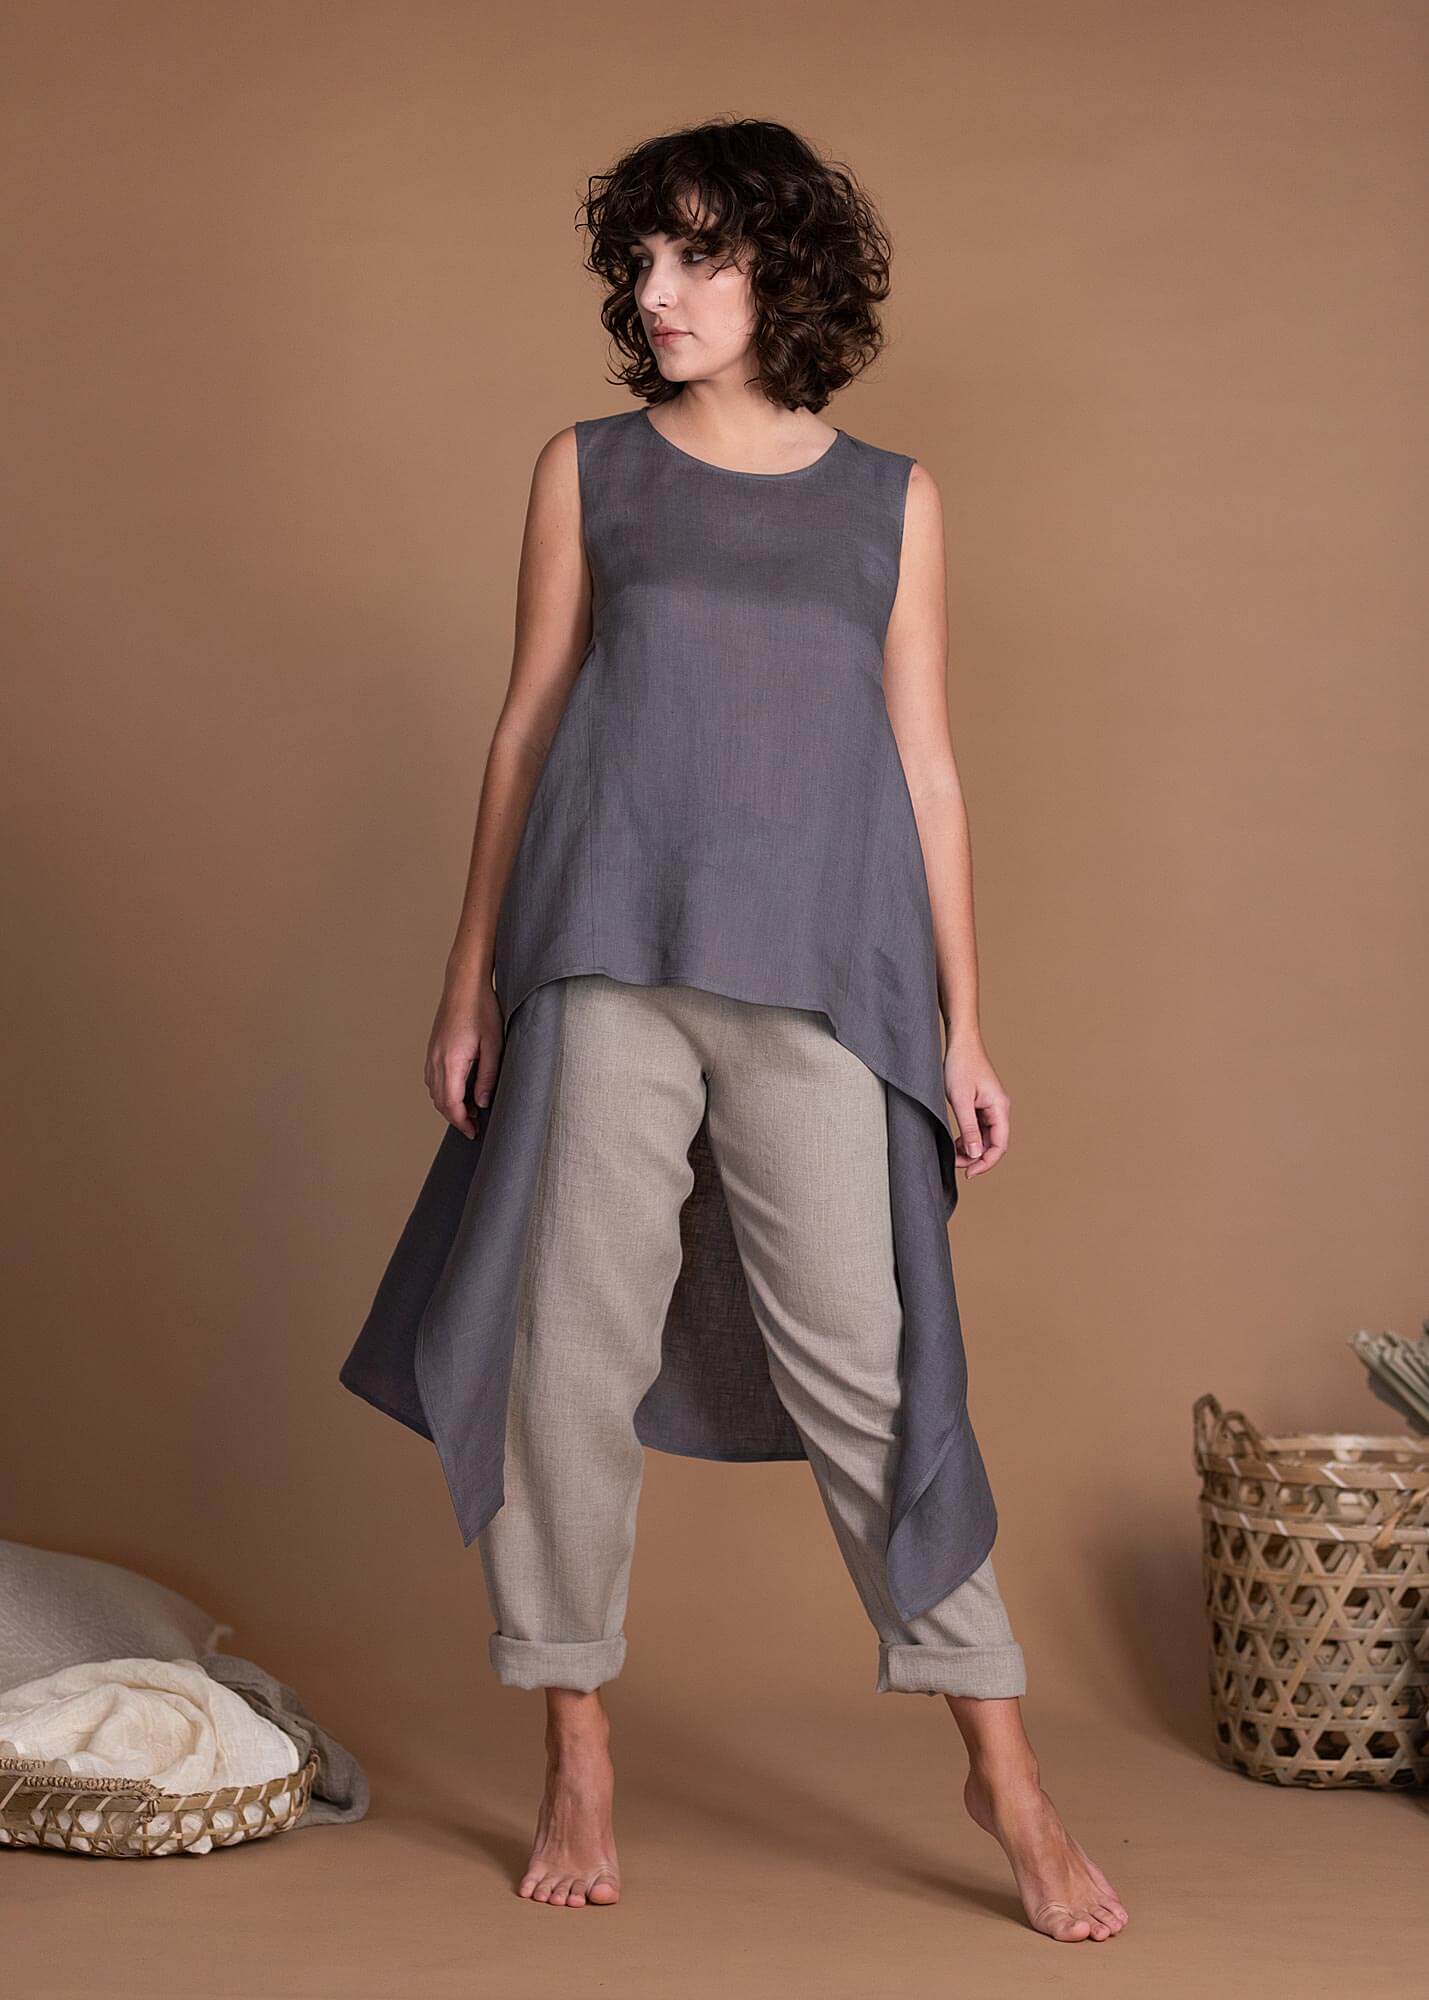 Women's Summer High Low Hem Asymmetric Linen Top Tunic